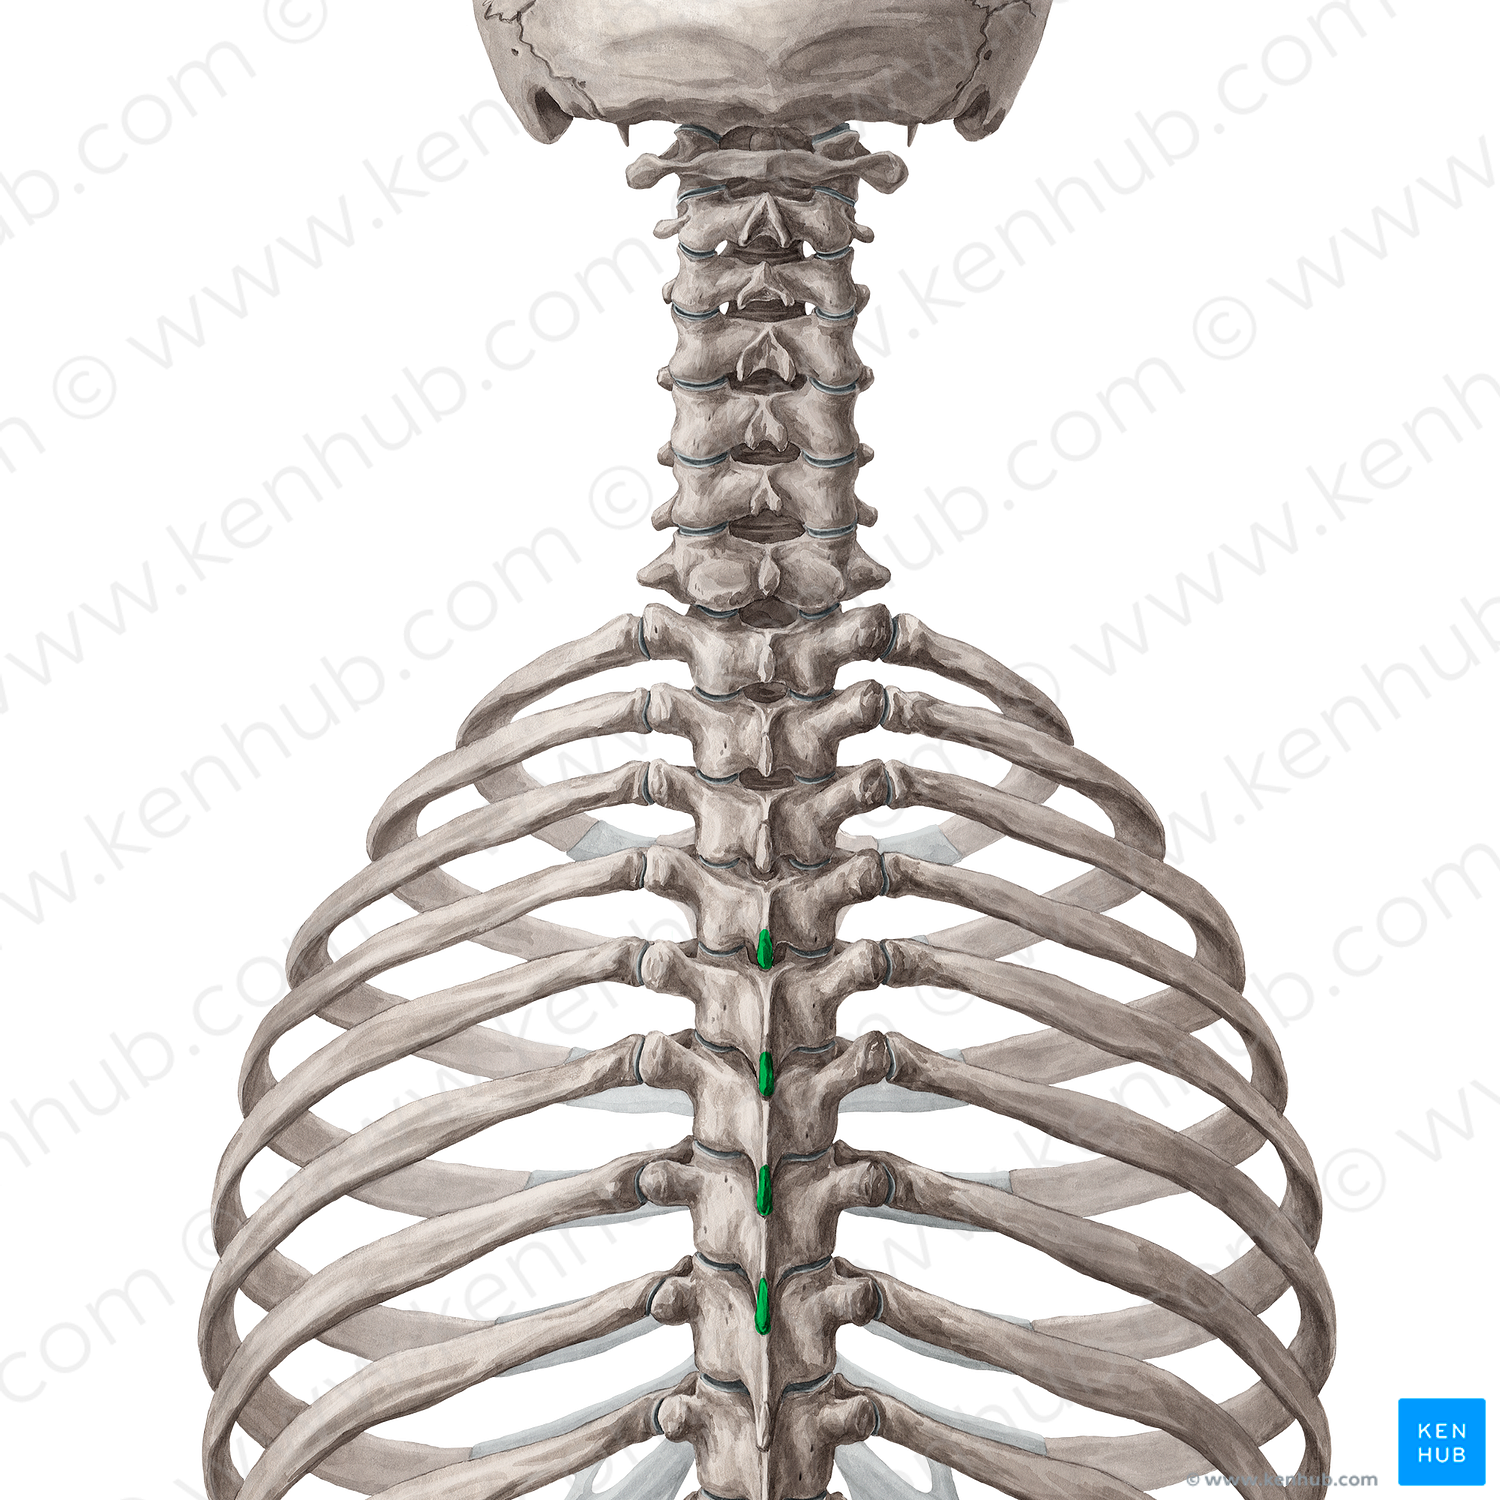 Spinous processes of vertebrae T4-T7 (#14484)